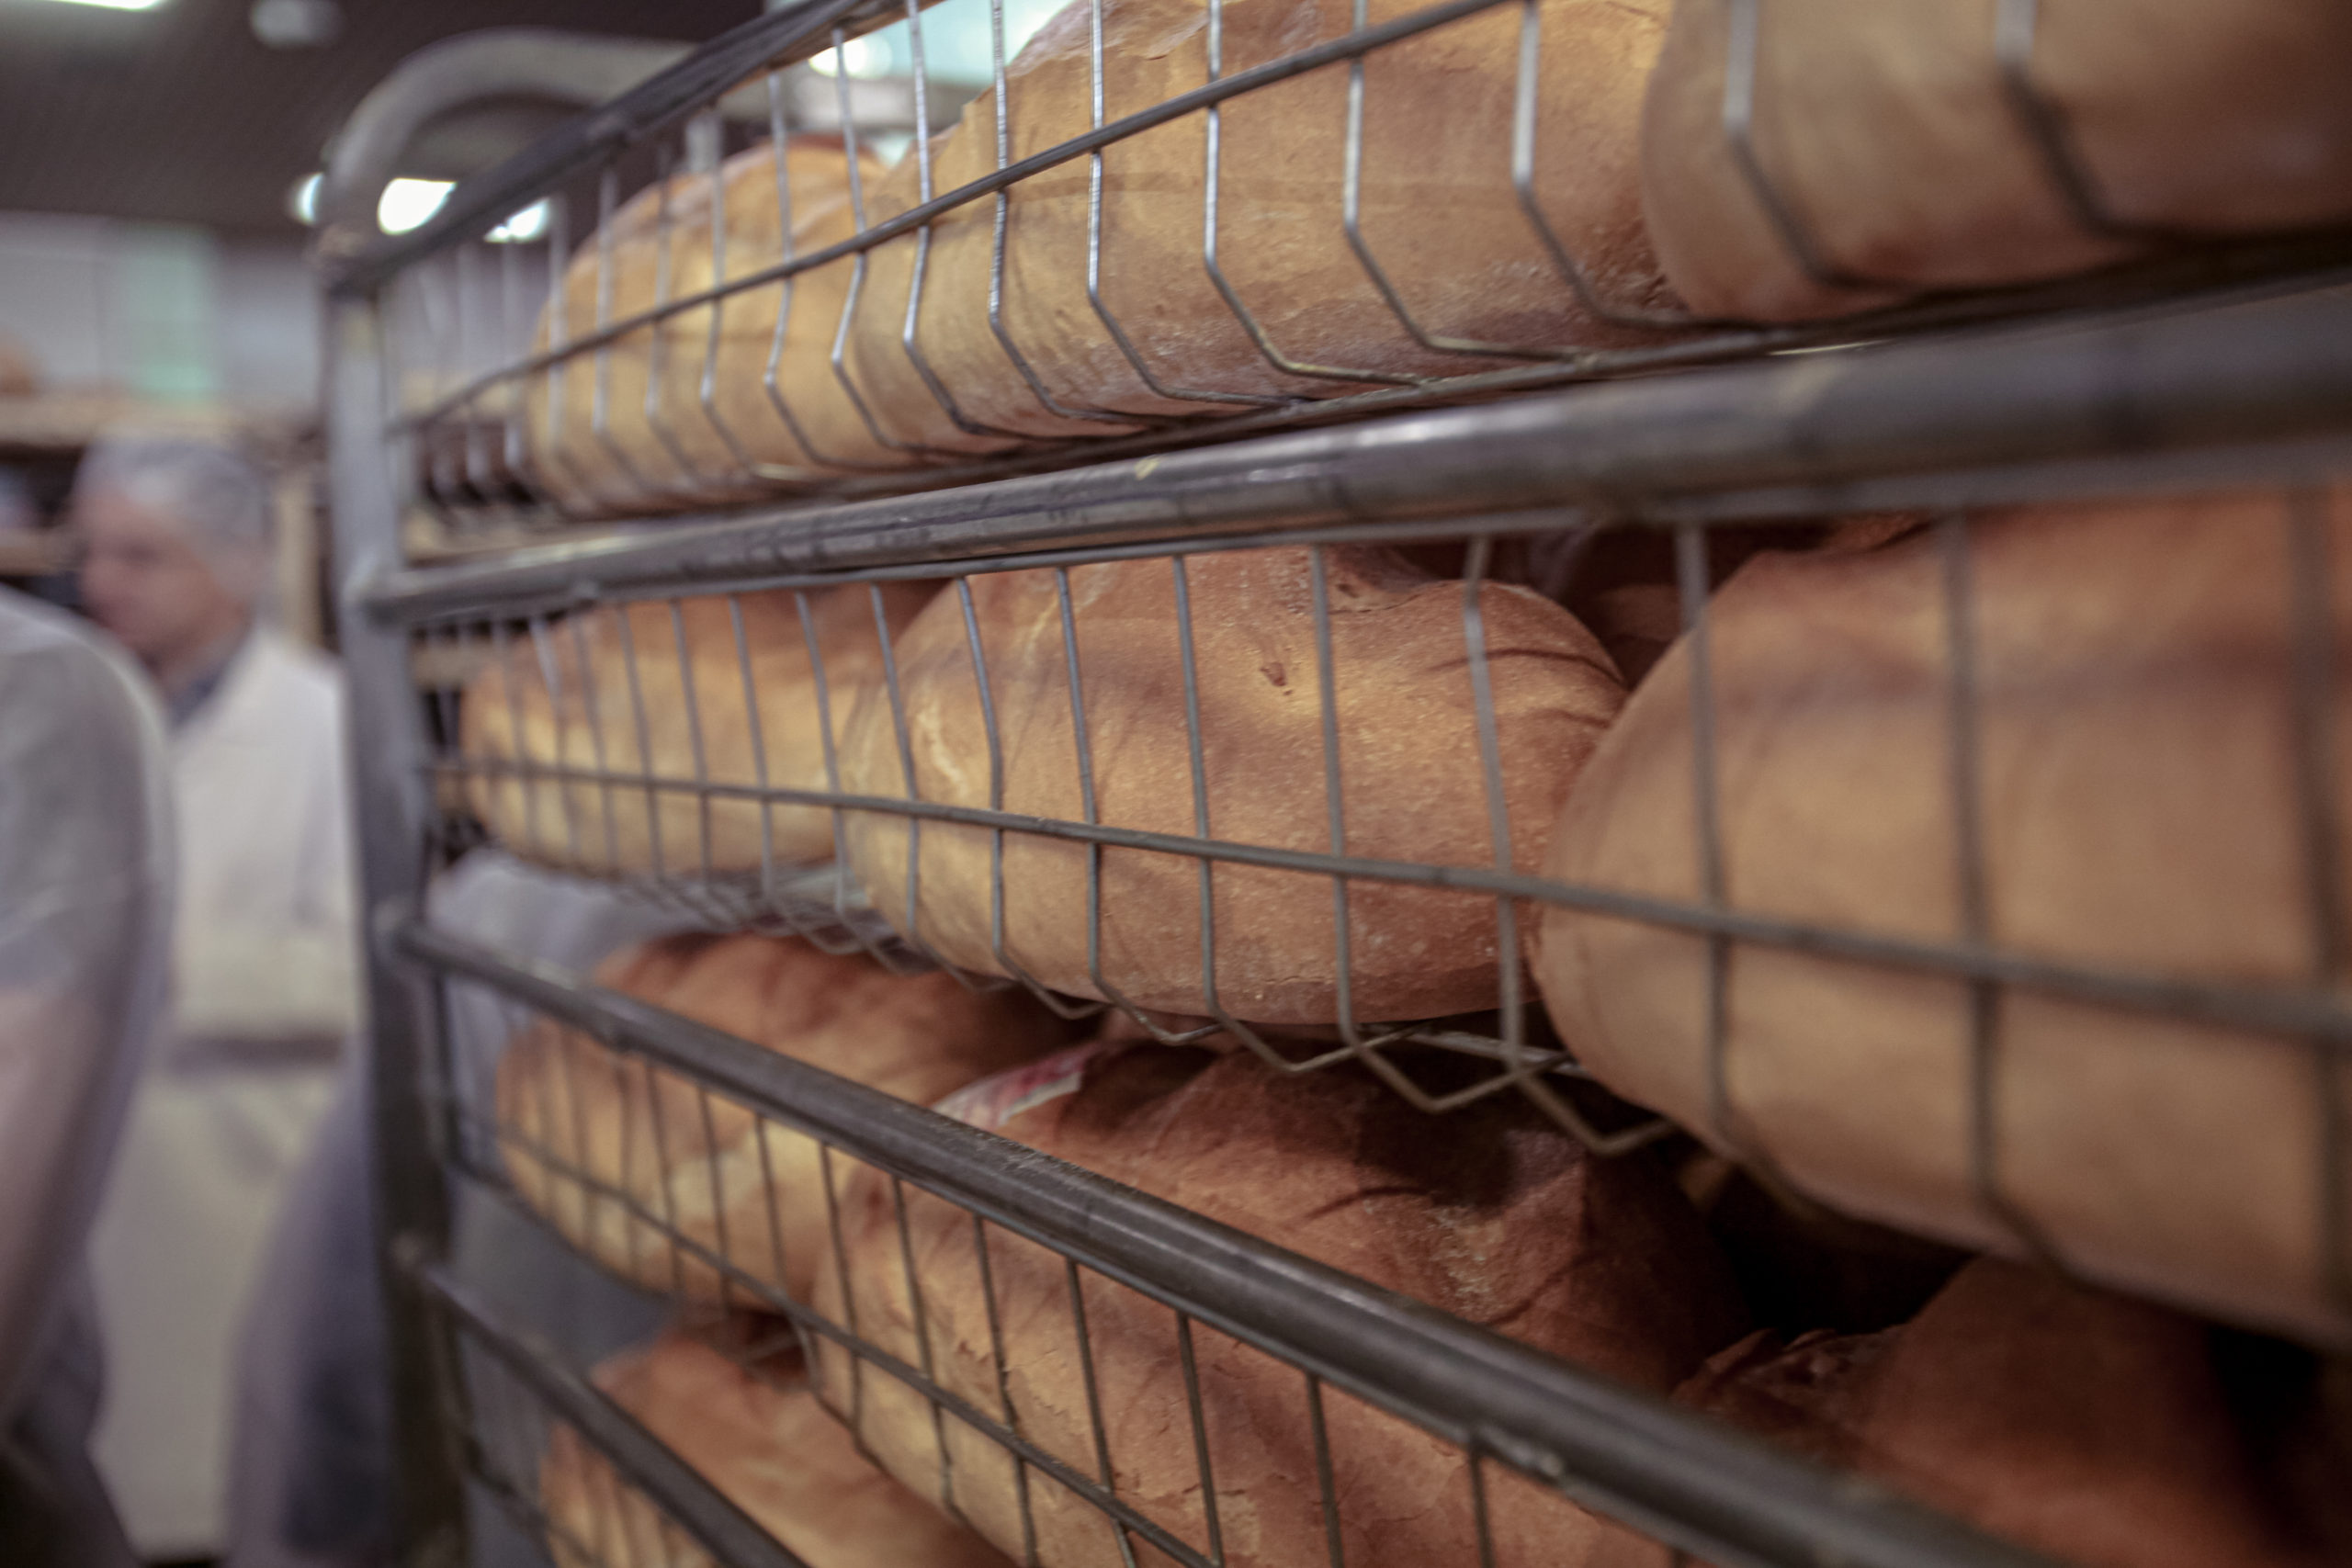 Frissen sült kenyérrel töltött állvány egy pékségben. A kenyerek több polcon szépen egymásra vannak rakva. A háttérben fehér egyenruhás munkások láthatók, kissé életlenül.